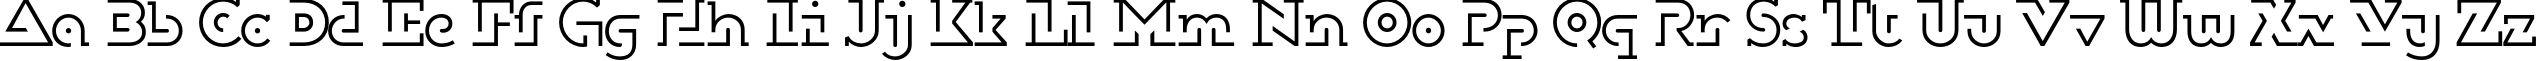 Пример написания английского алфавита шрифтом DublonBrusLight